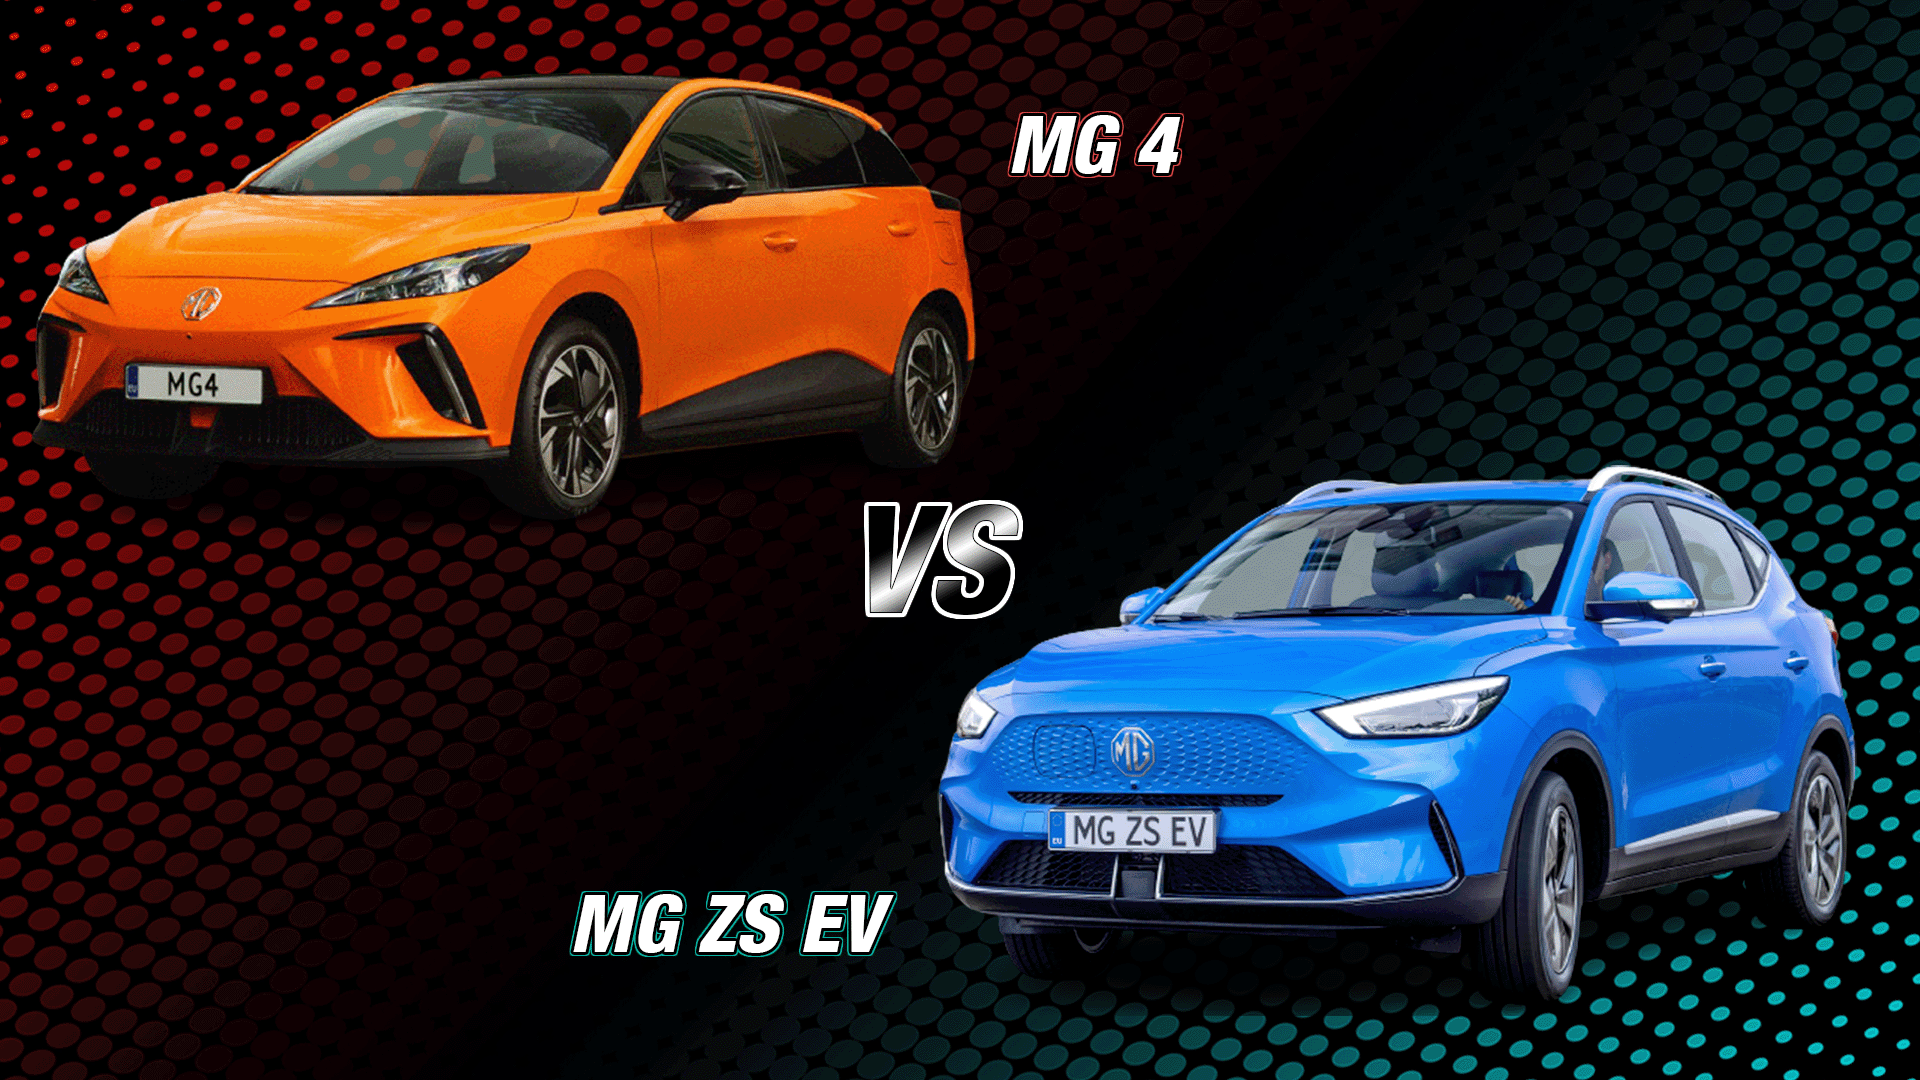 MG4 vs MG ZS EV comparison